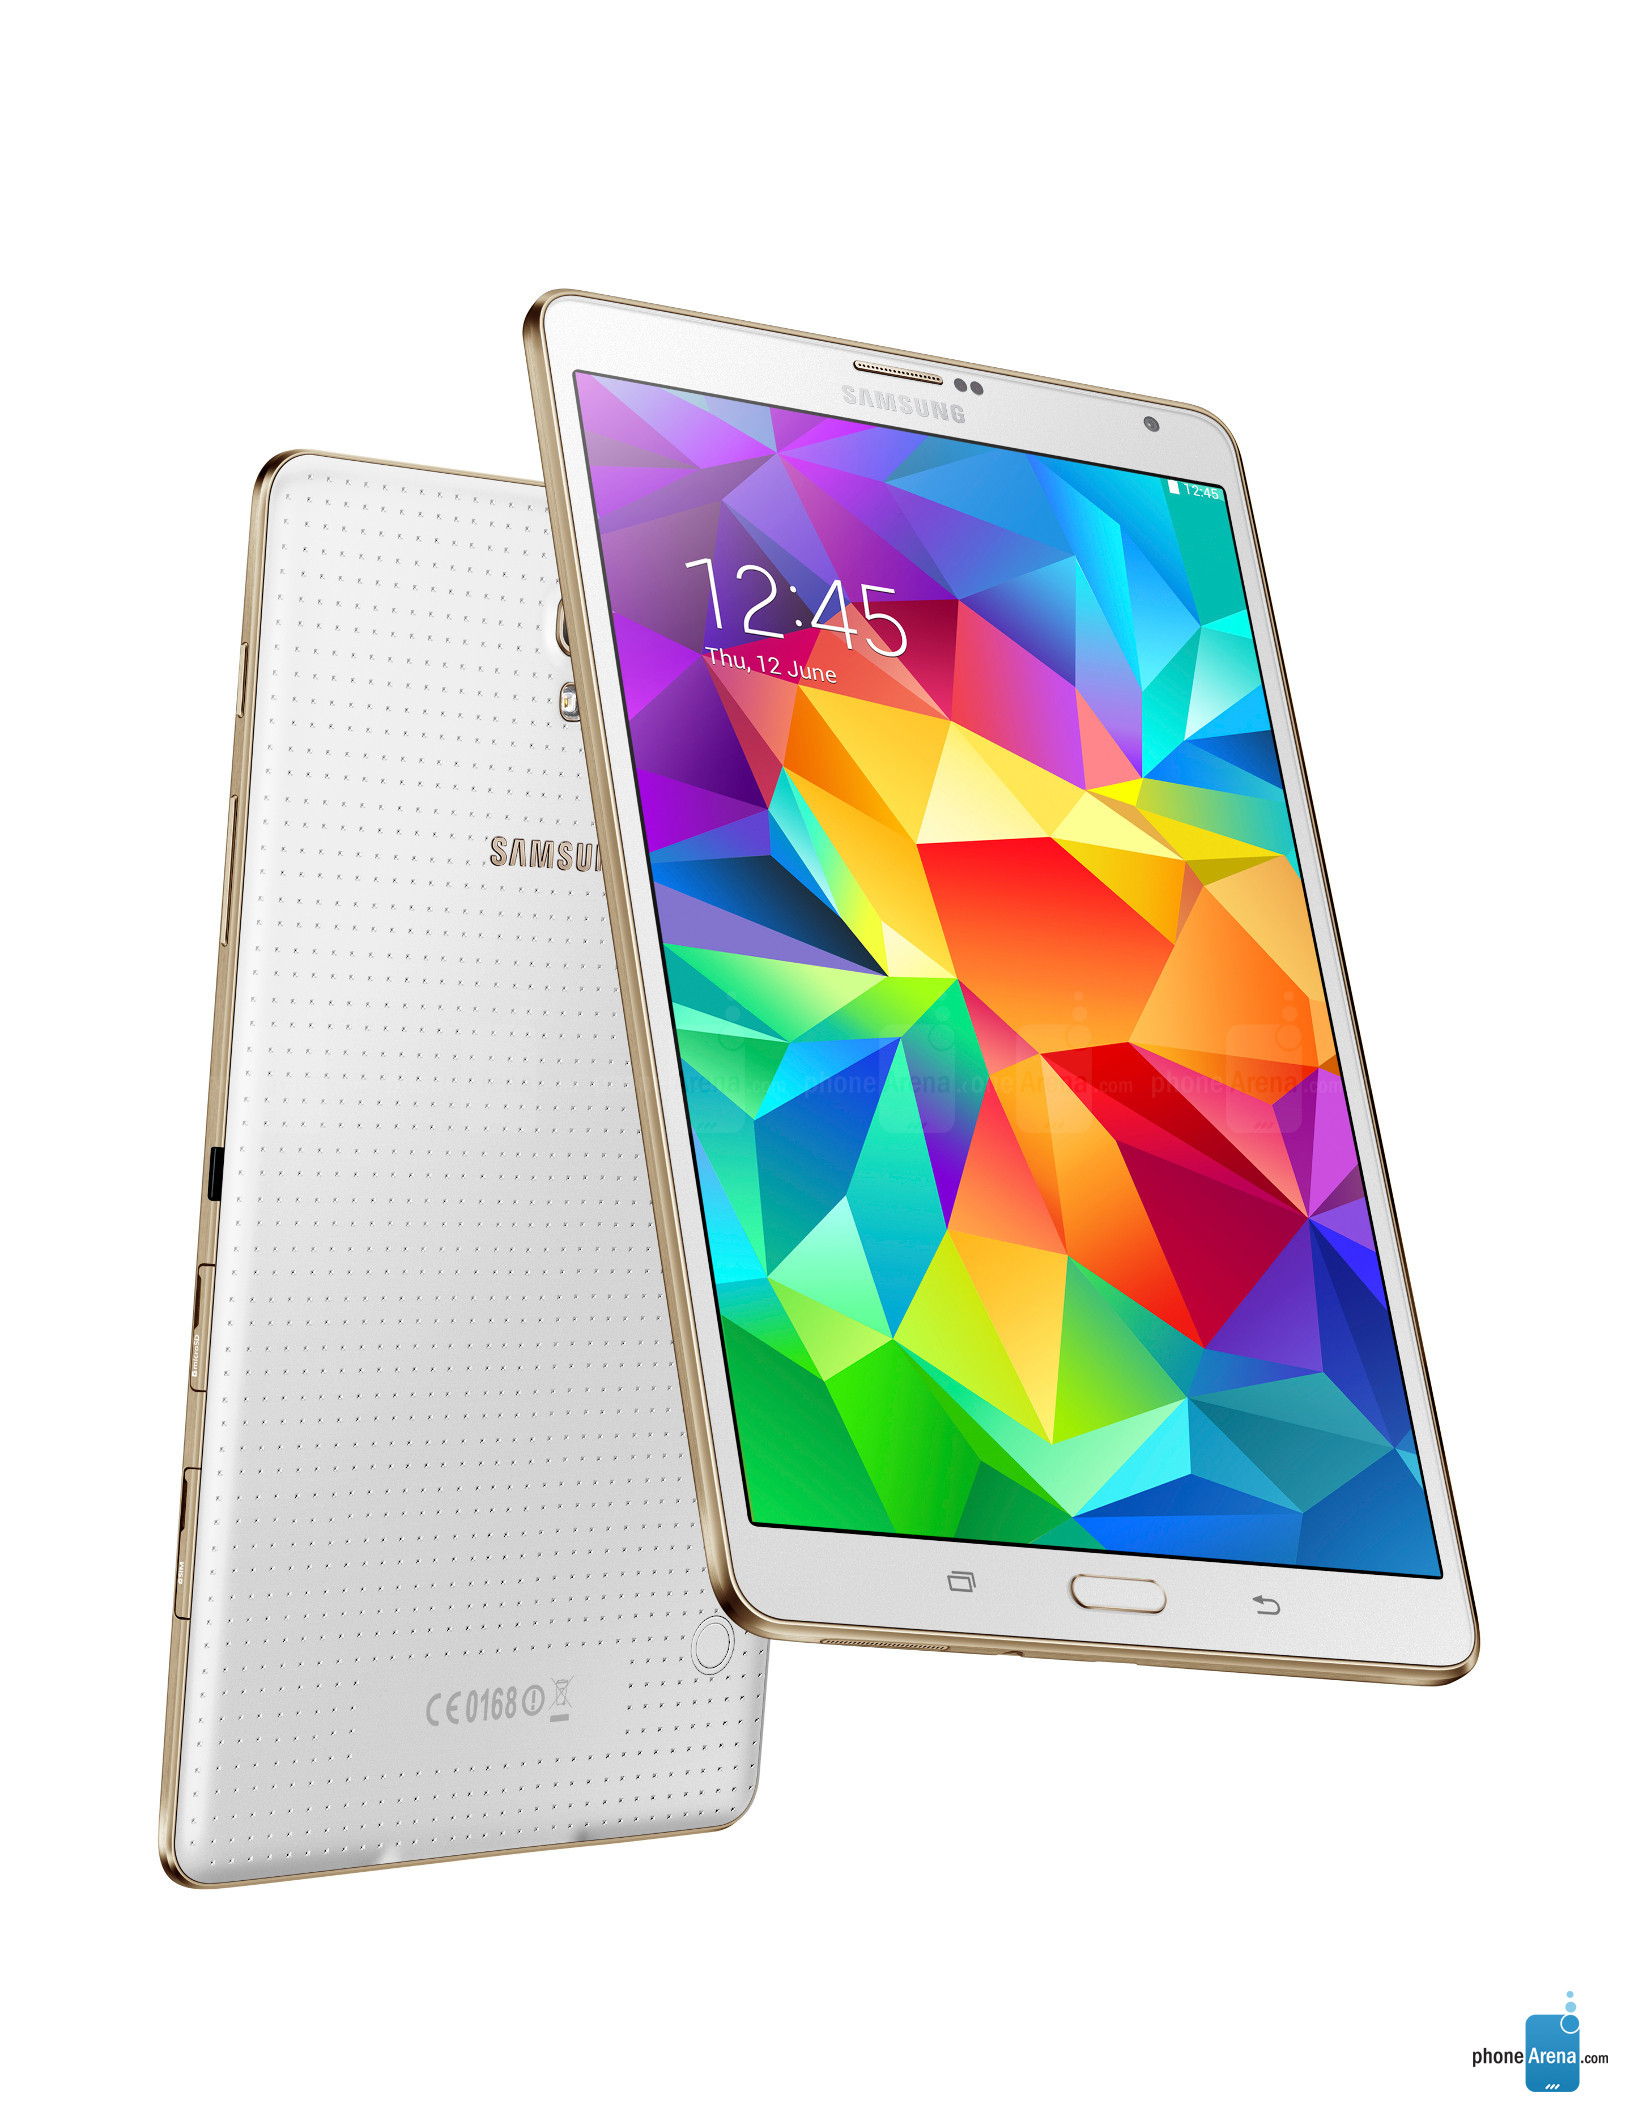 Samsung Galaxy Tab Pro 8.4 Wi-Fi - Recenze mobilních telefonů